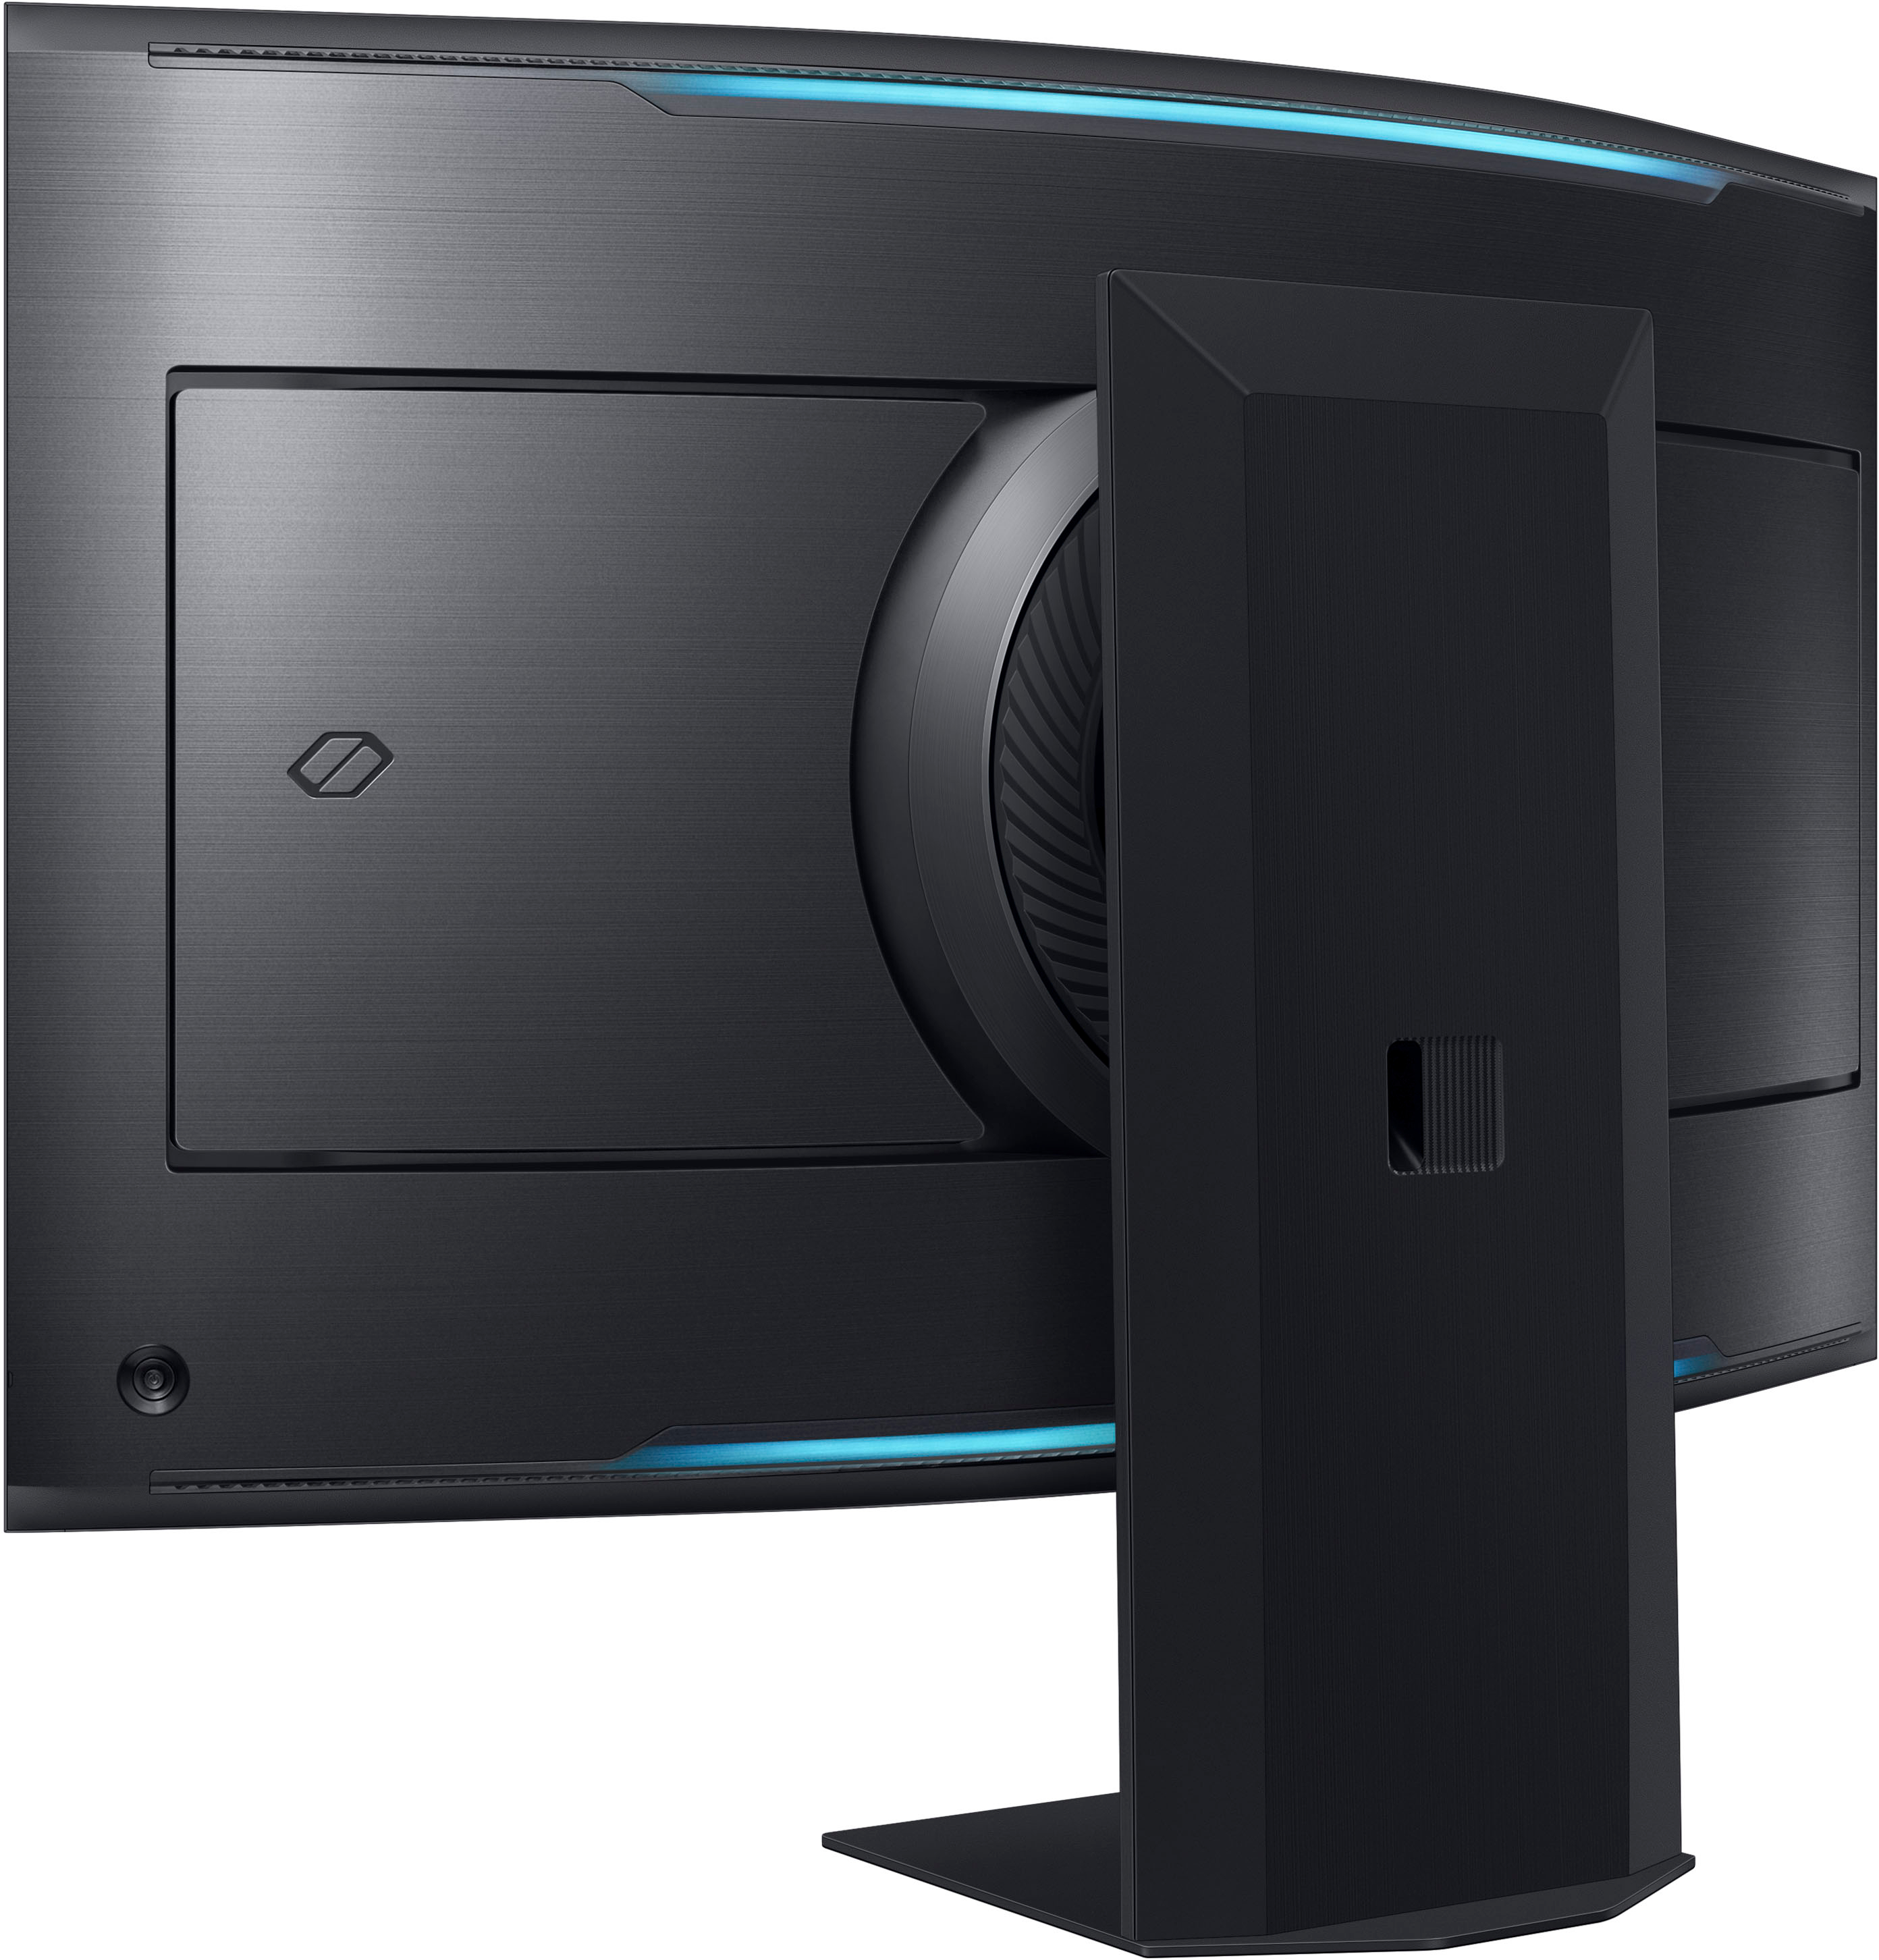 Samsung Odyssey Ark es el nuevo monitor curvo vertical